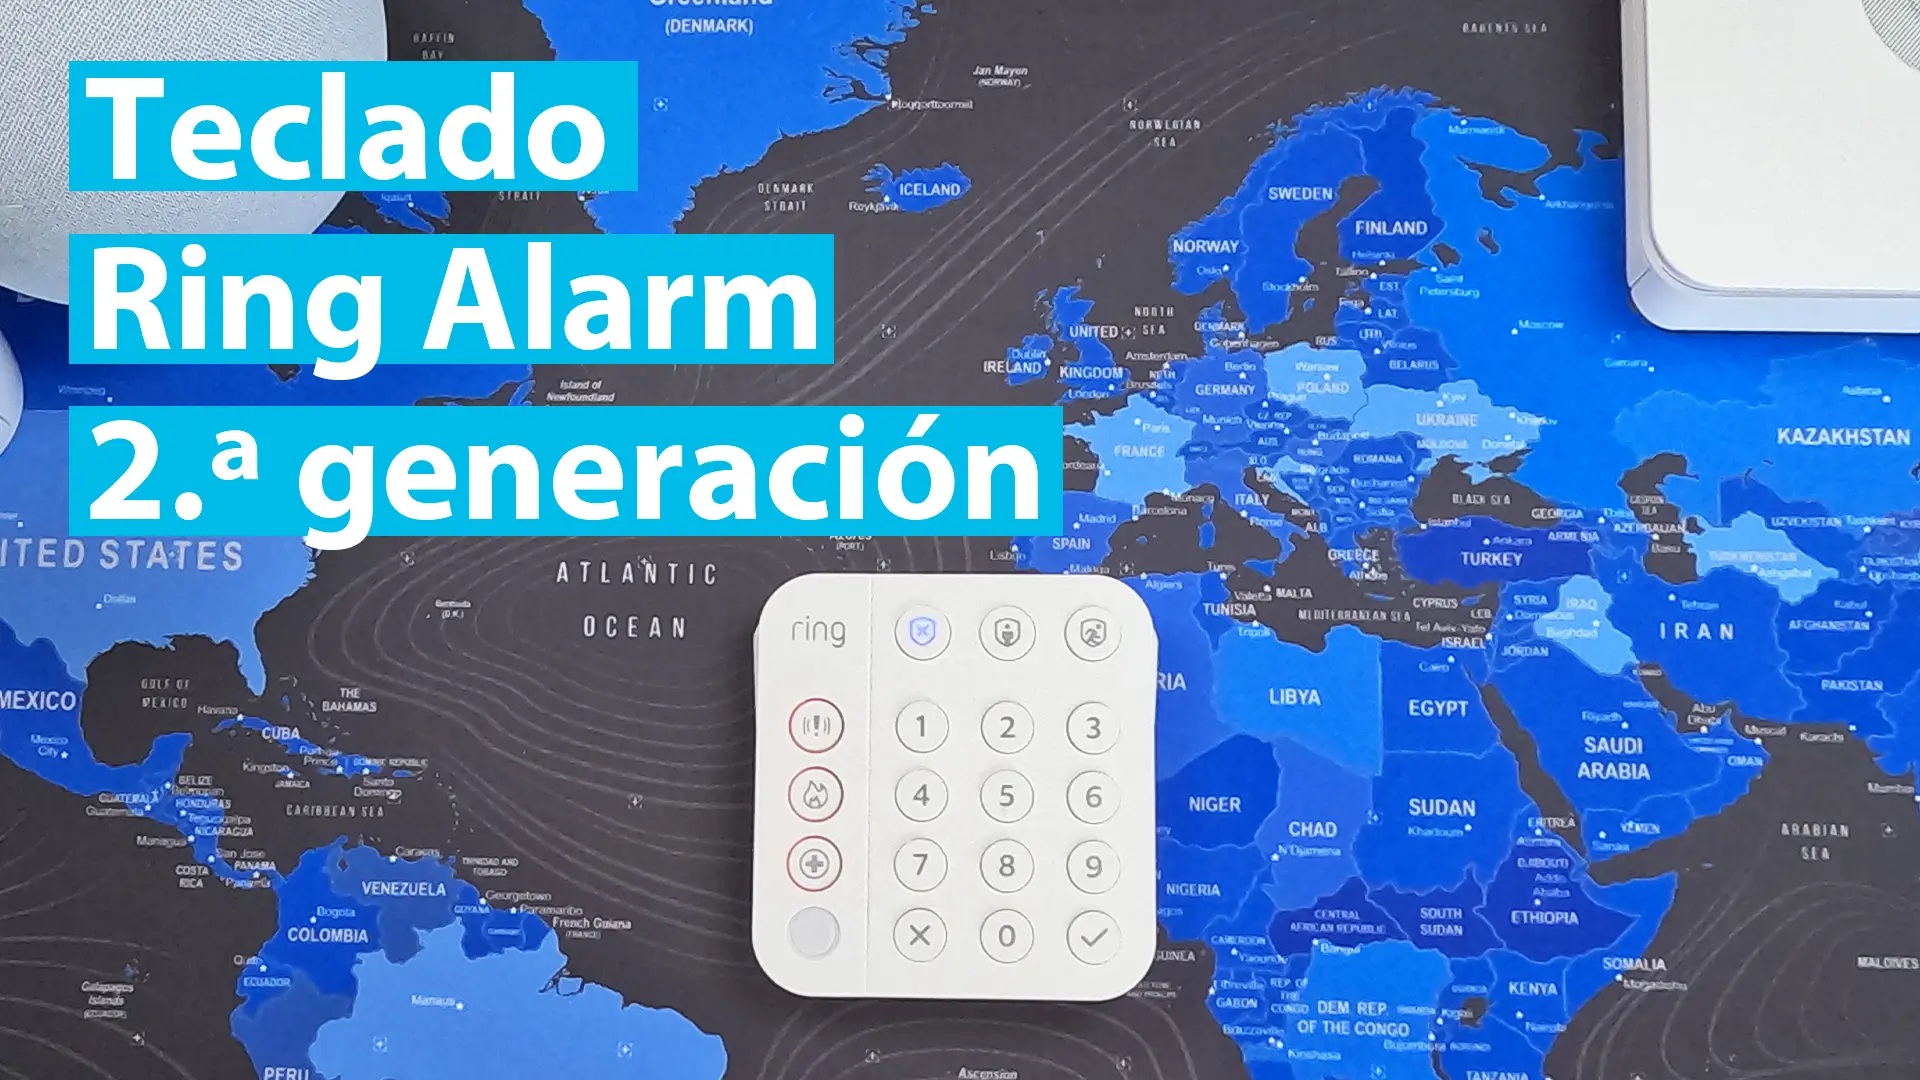 Teclado Ring Alarm 2a generación Tu seguridad en el hogar